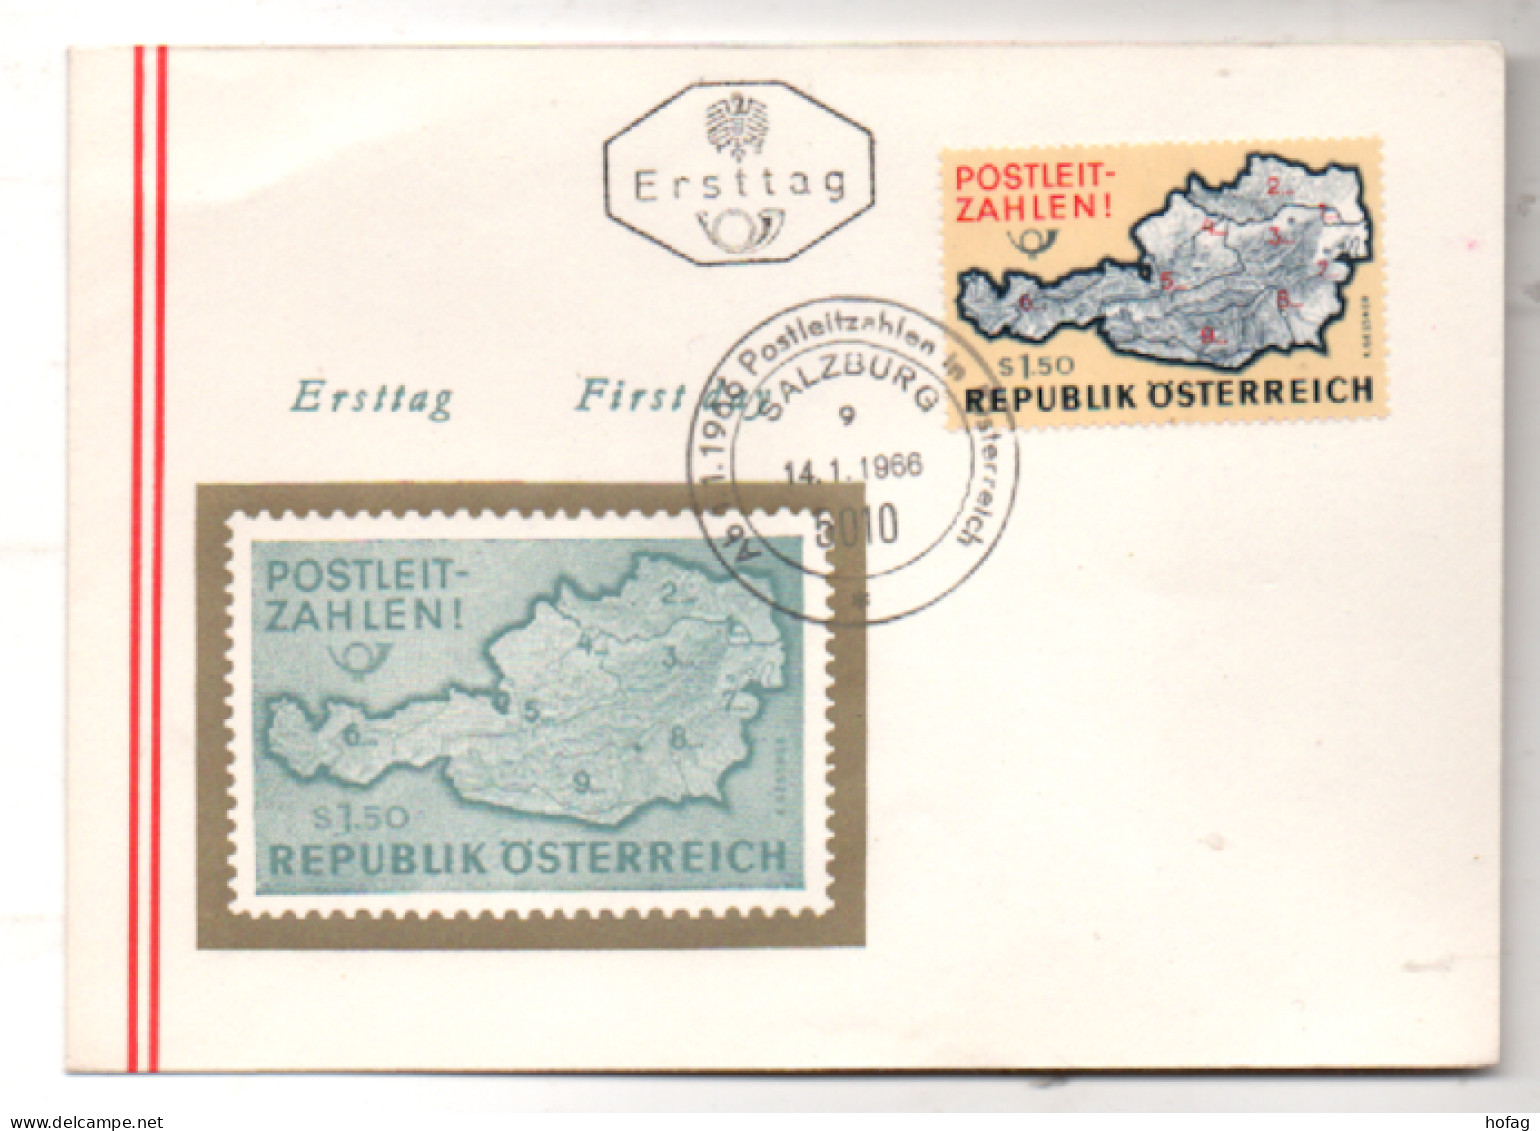 Österreich 1966 MiNr.: 1201 Postleitzahlen Ersttag Austria FDC Scott: 756  YT: 1036 Sg: 1463 - FDC